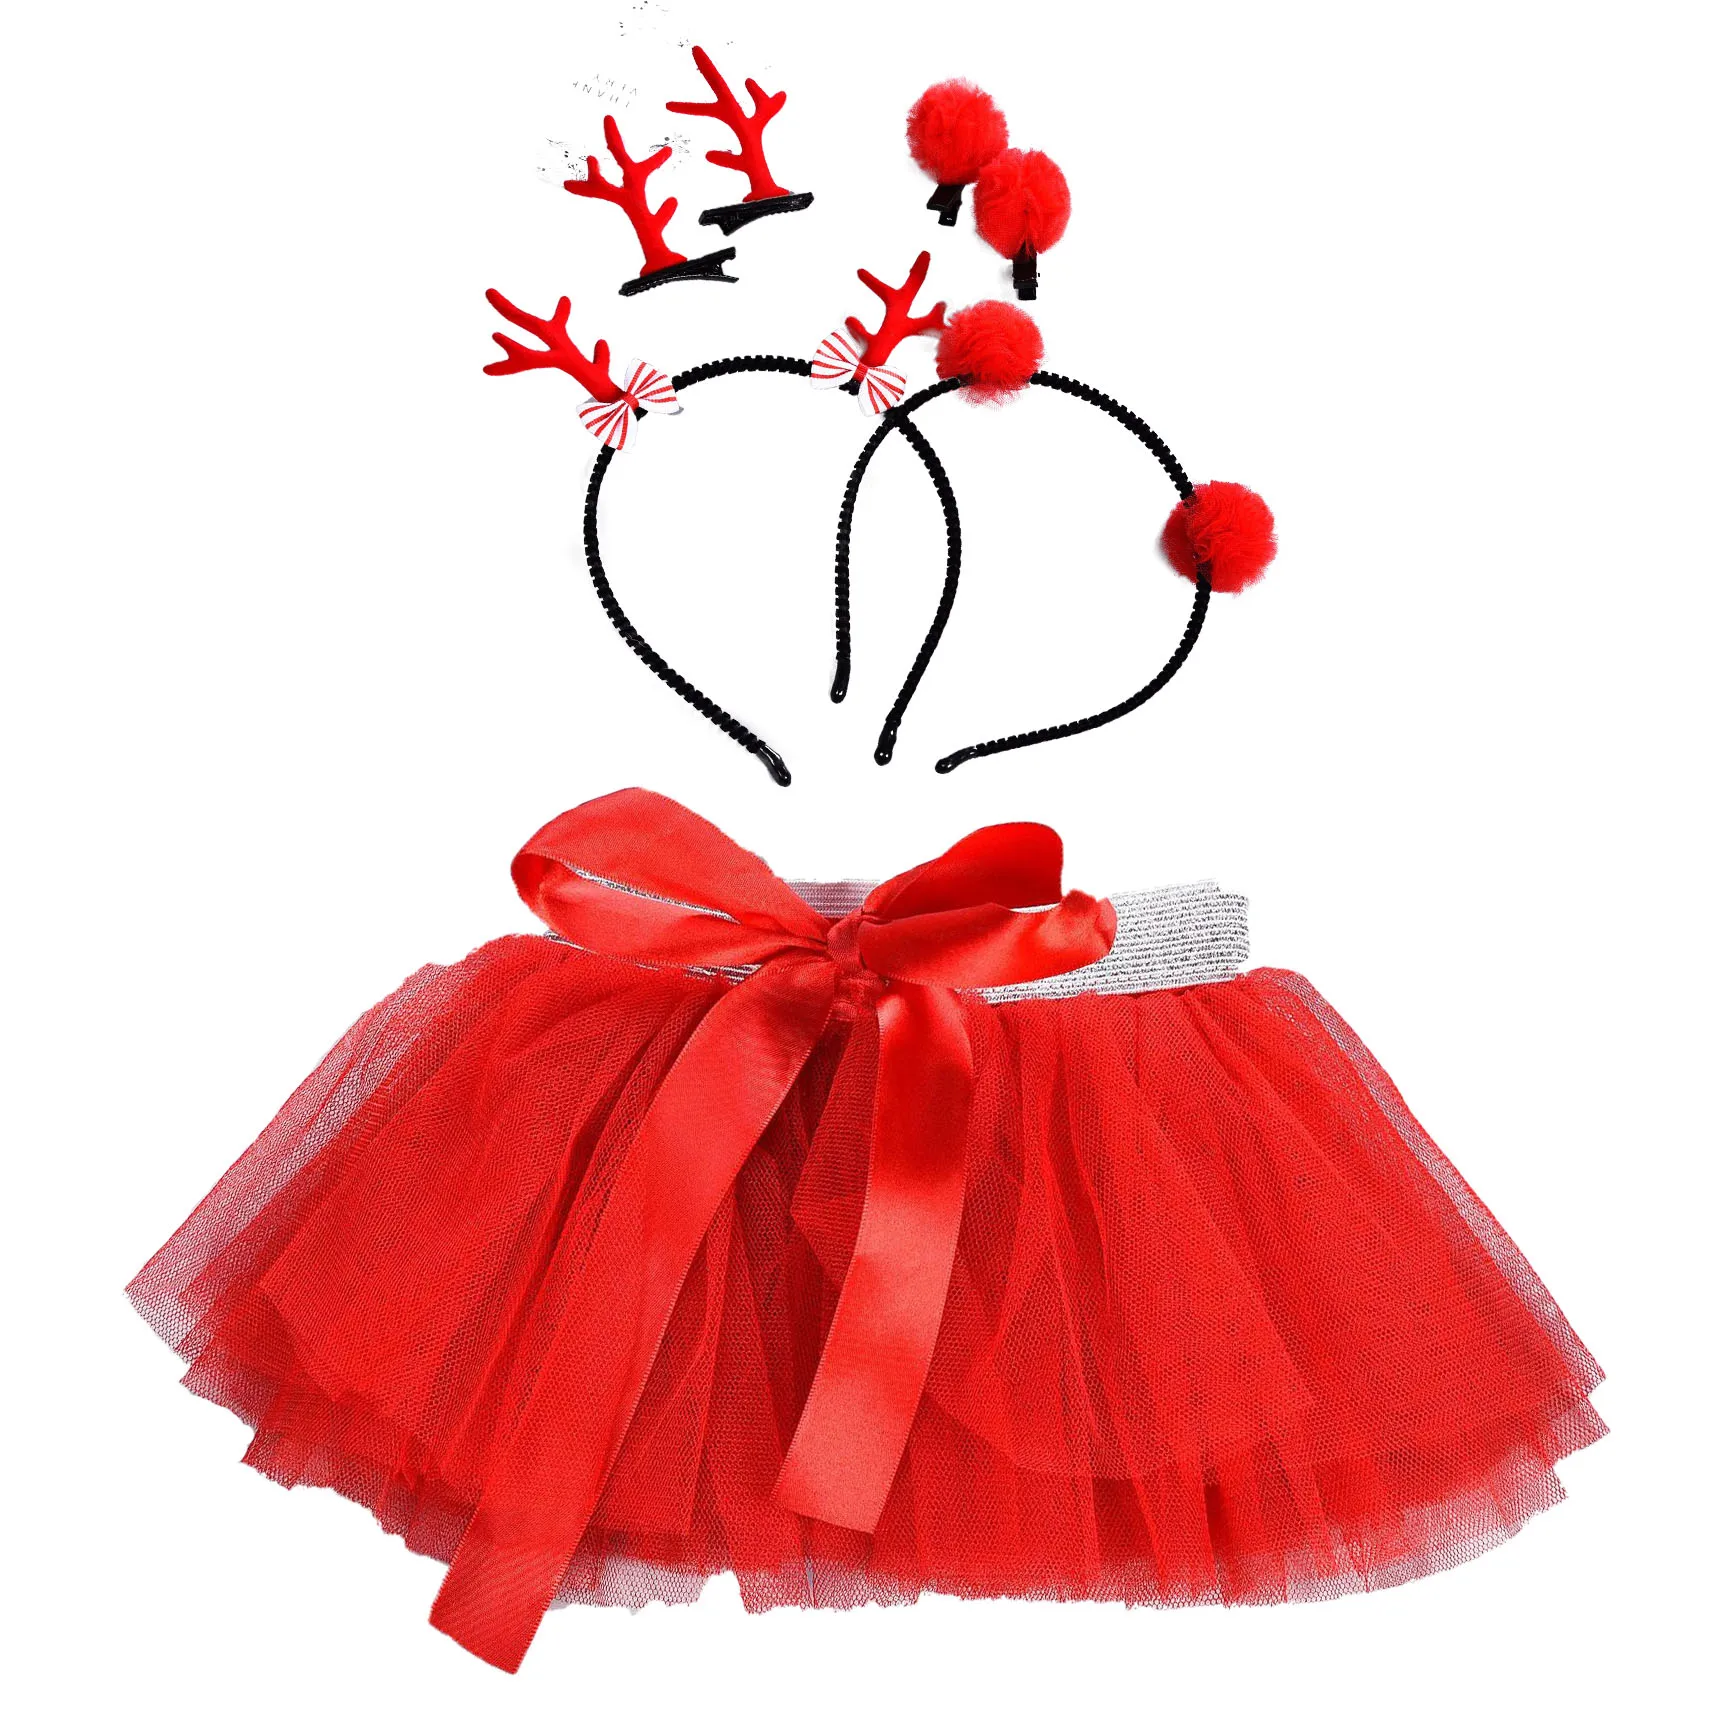 Children's Summer Girl's Red Gauze Skirt Christmas Antler Deer Horn Hair Hoop Infant Toddler Skirts Set for Kids Free Shipping